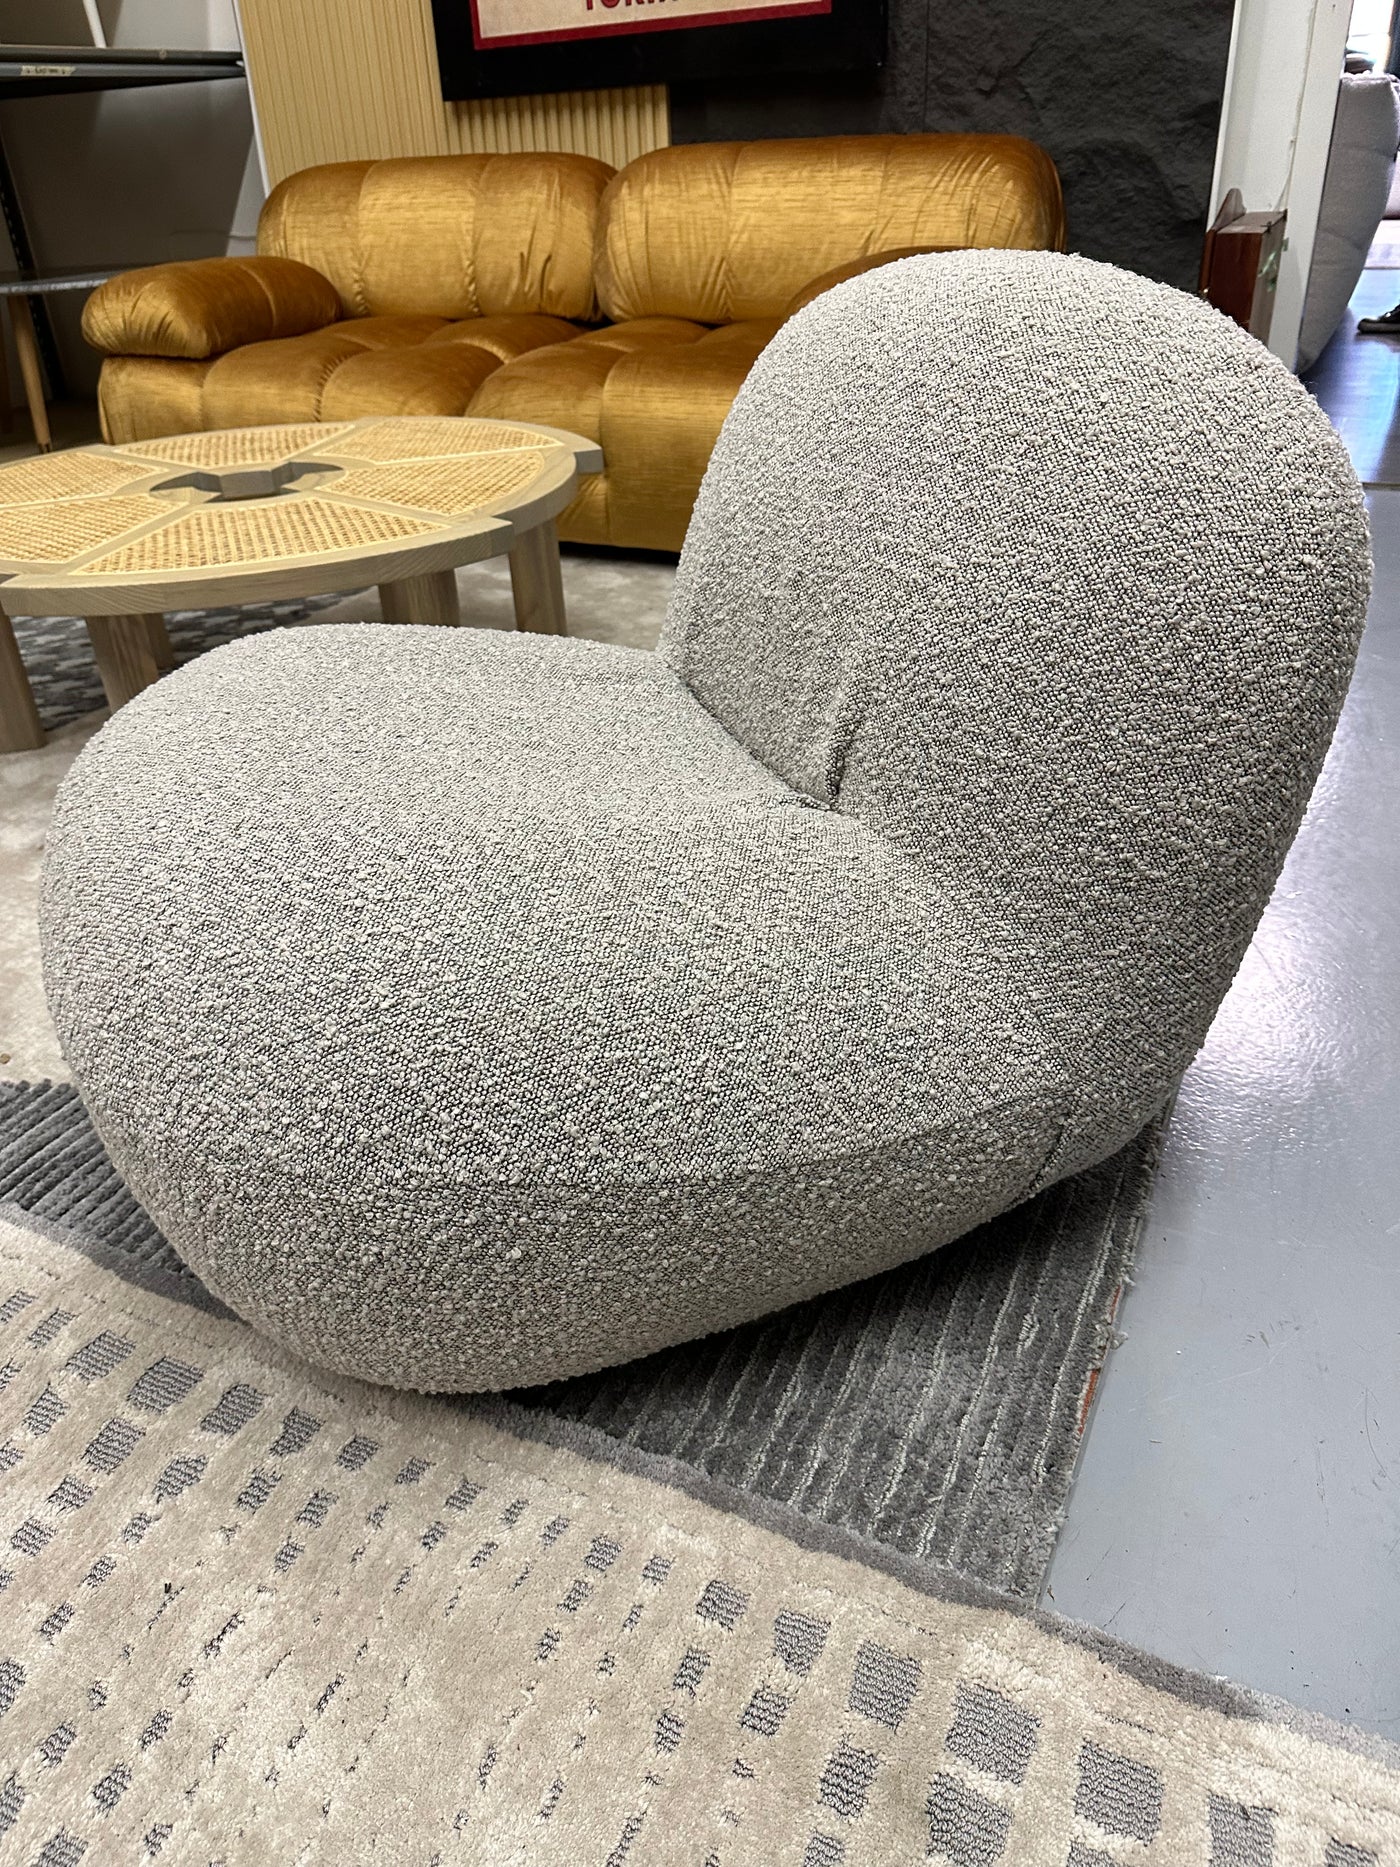 Cloud lounge chair